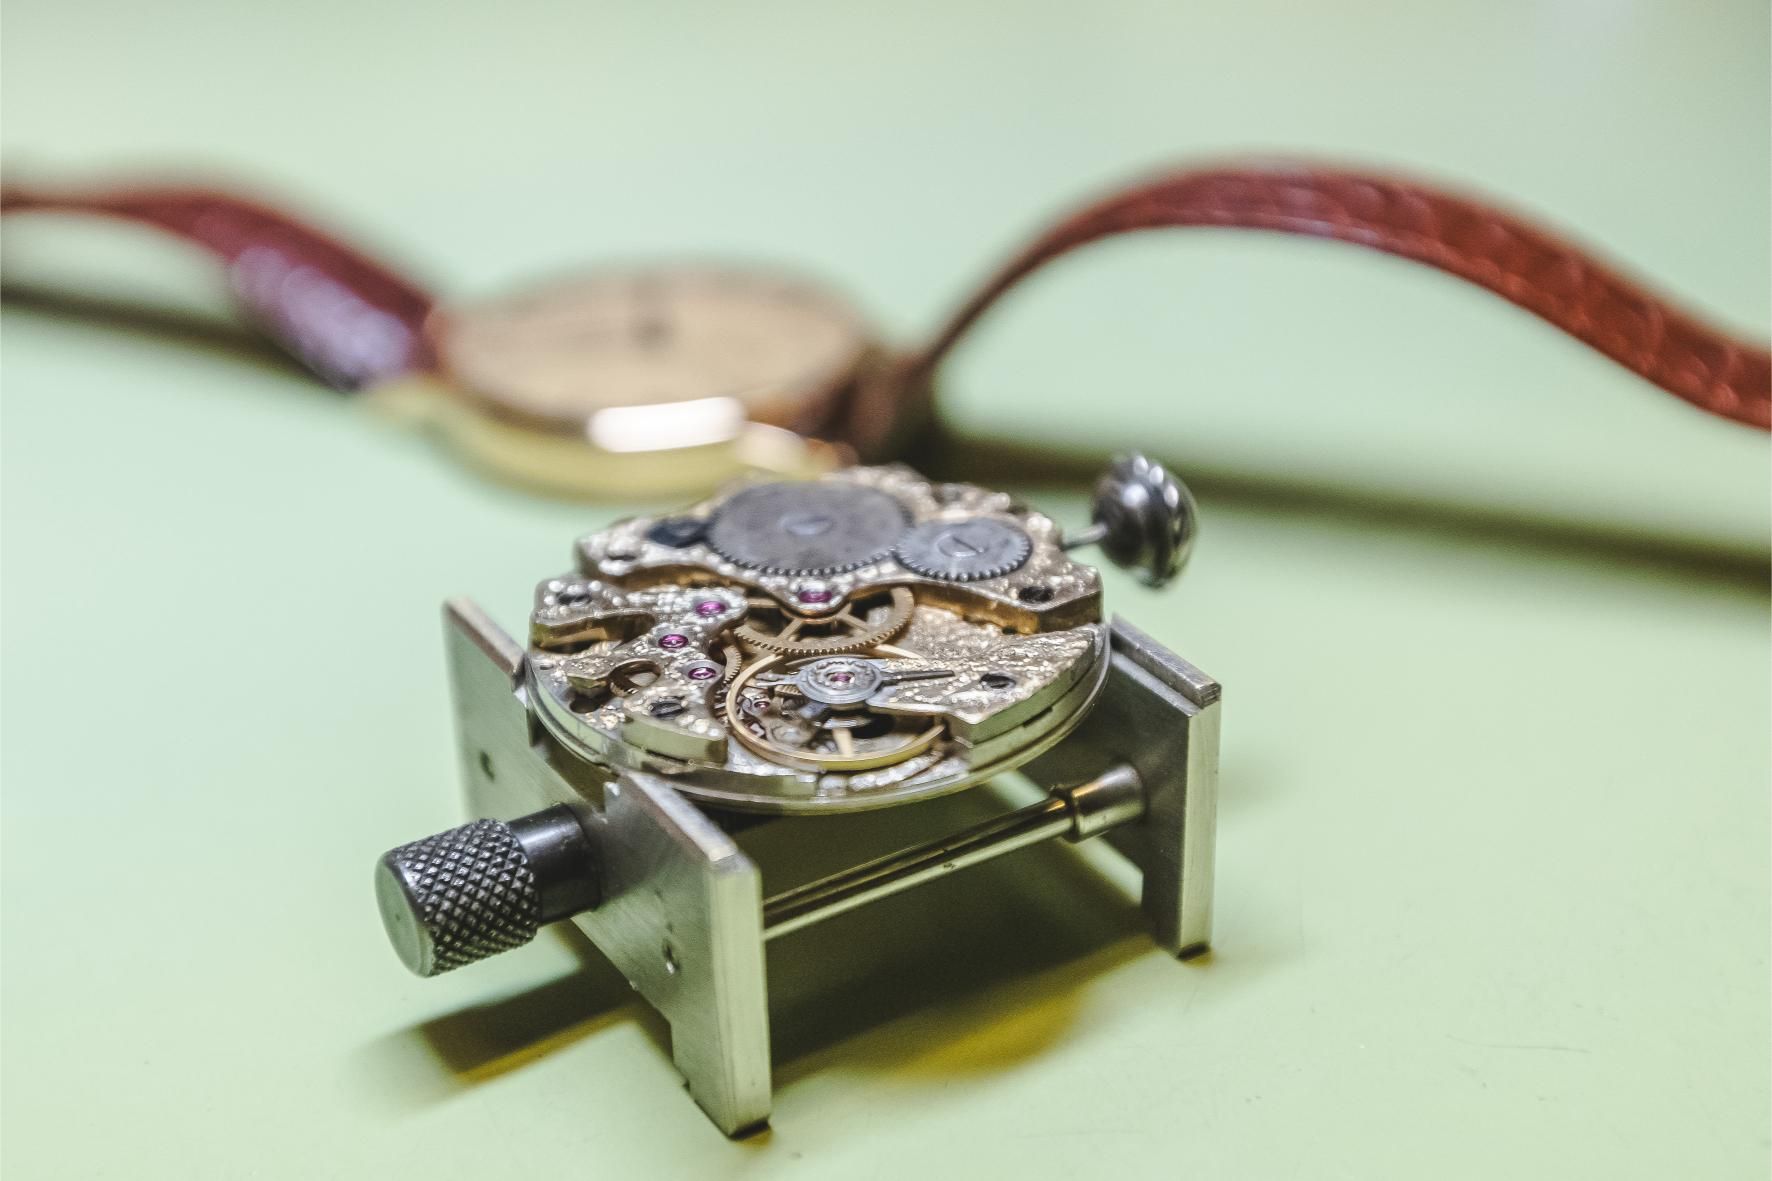 Piezas y un modelo acabado del reloj mecánico que Odilo Fernández fabrica artesanalmente como lo hacía su abuelo hace un siglo